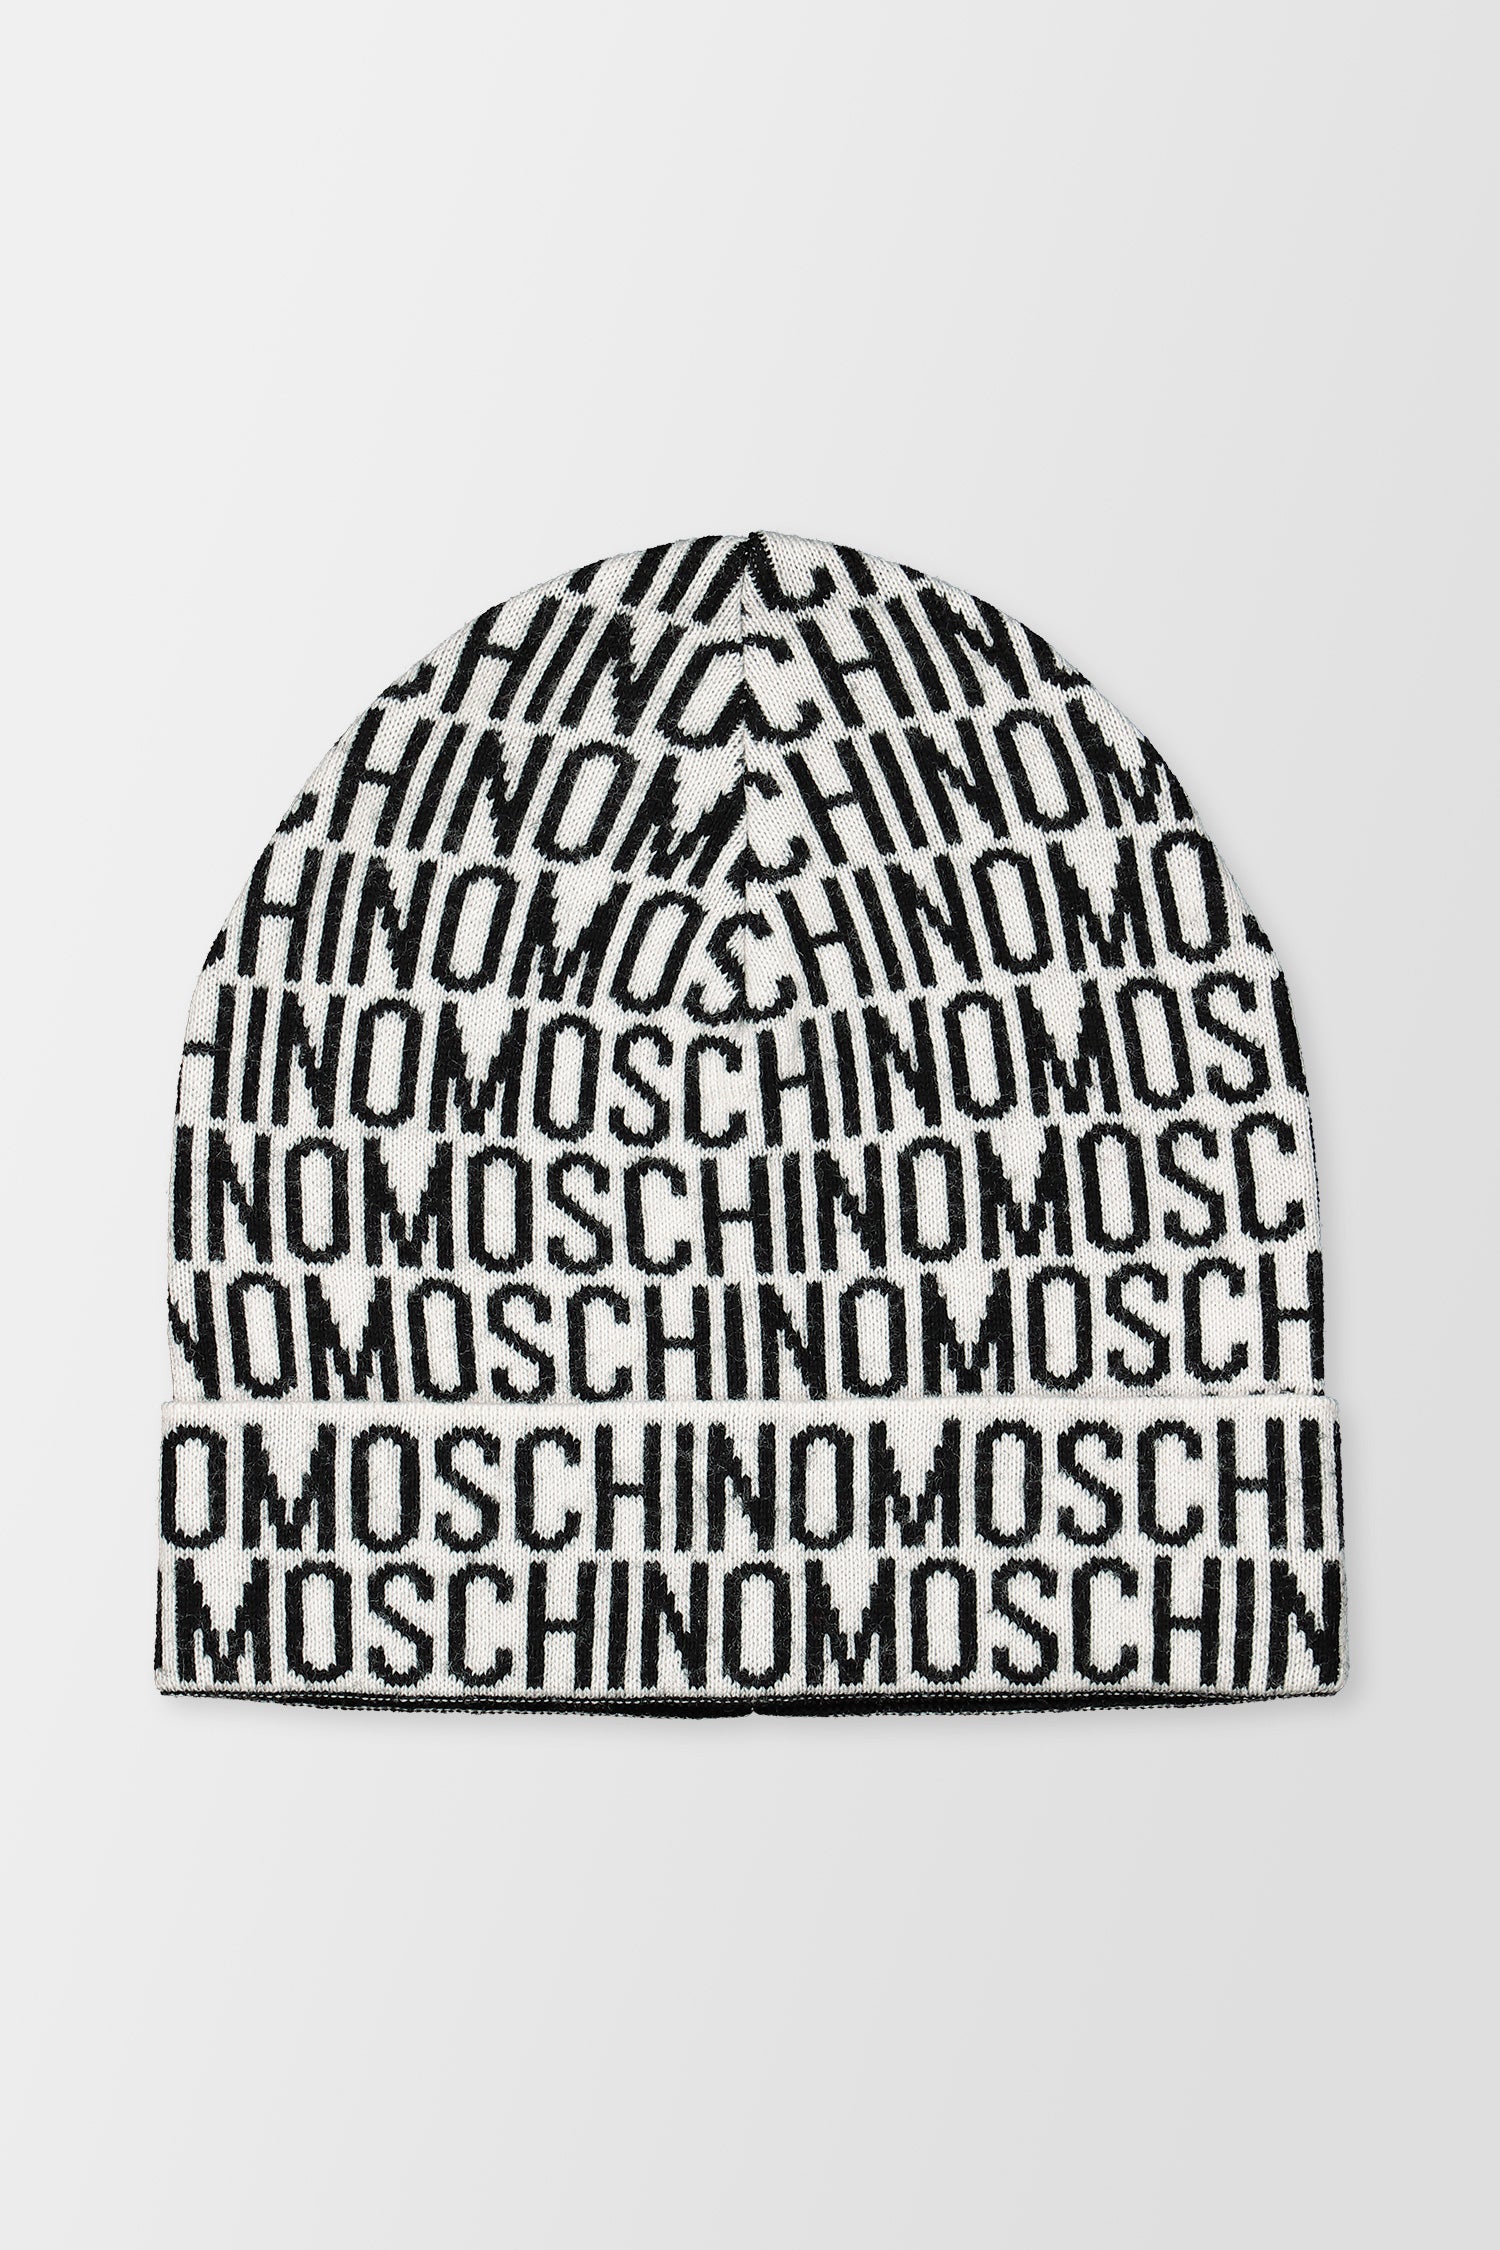 Moschino White Hat